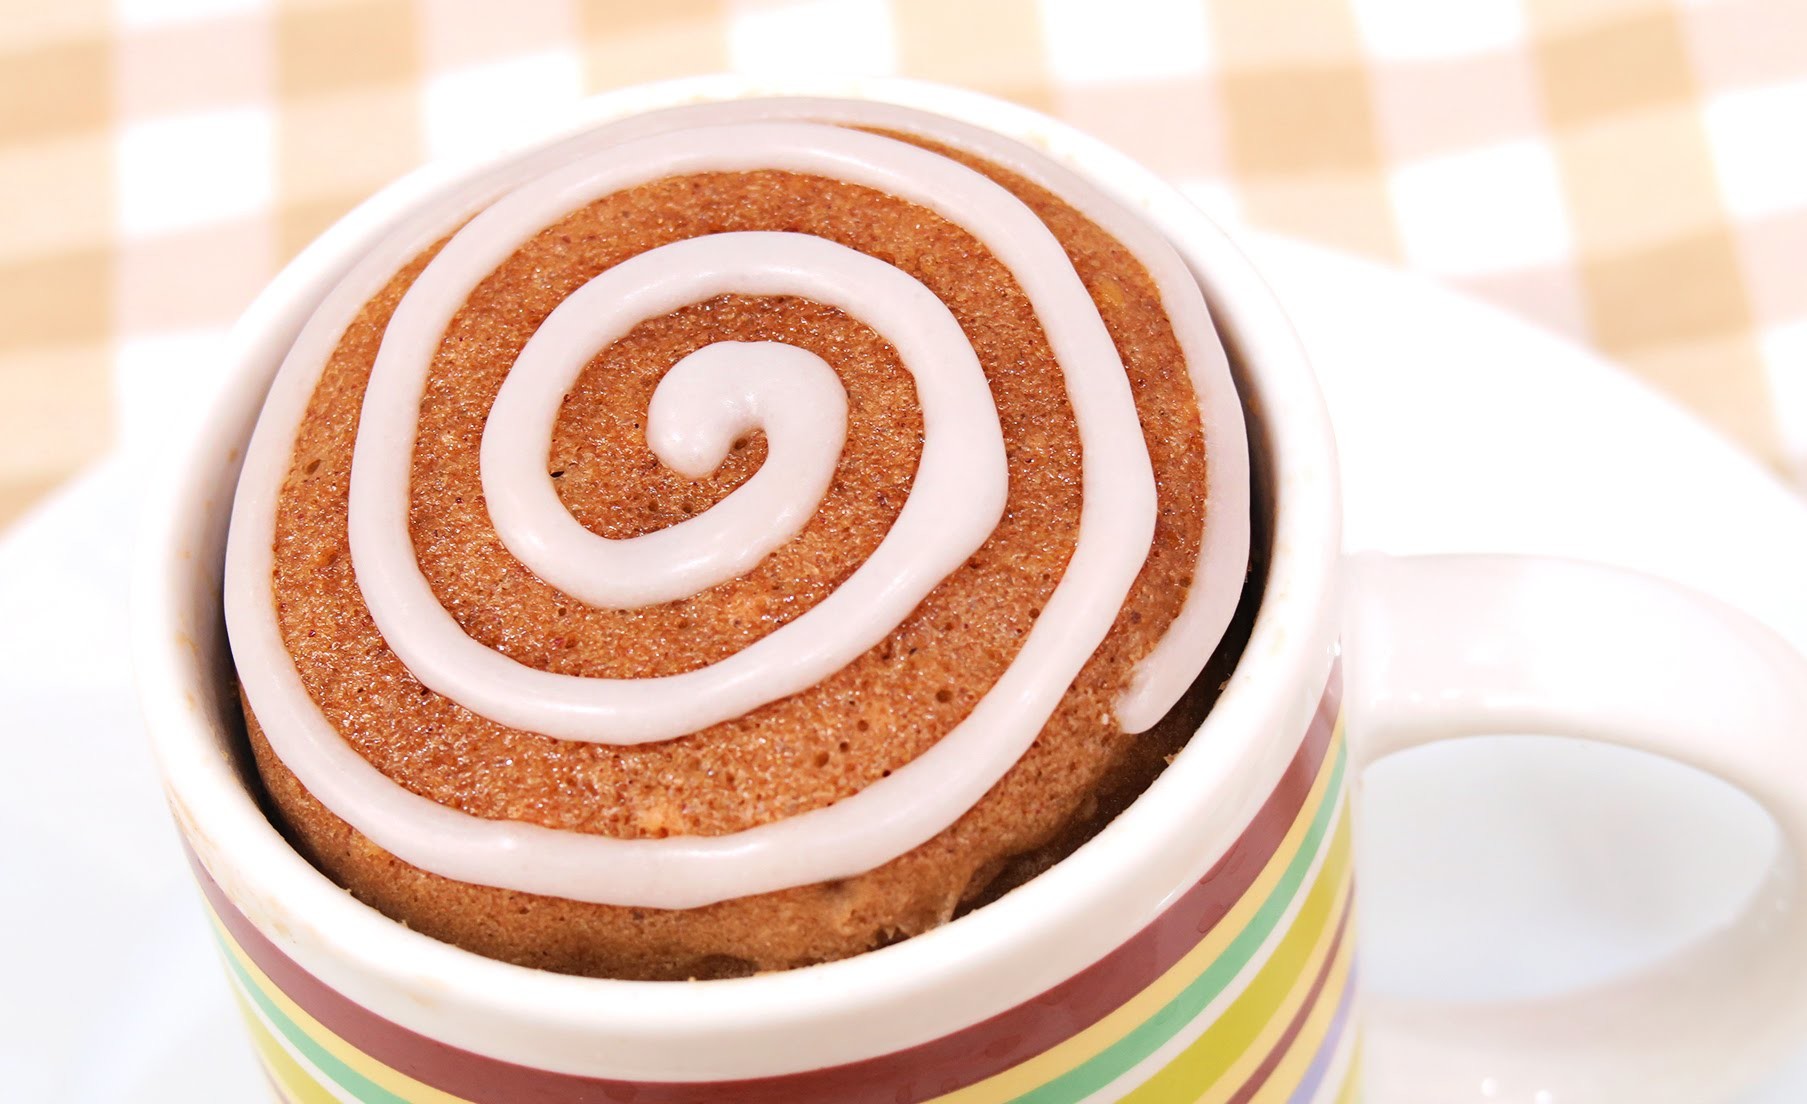 Mug Cake de Canela | Cinnamon Rolls | 1 Minuto en el Microondas!